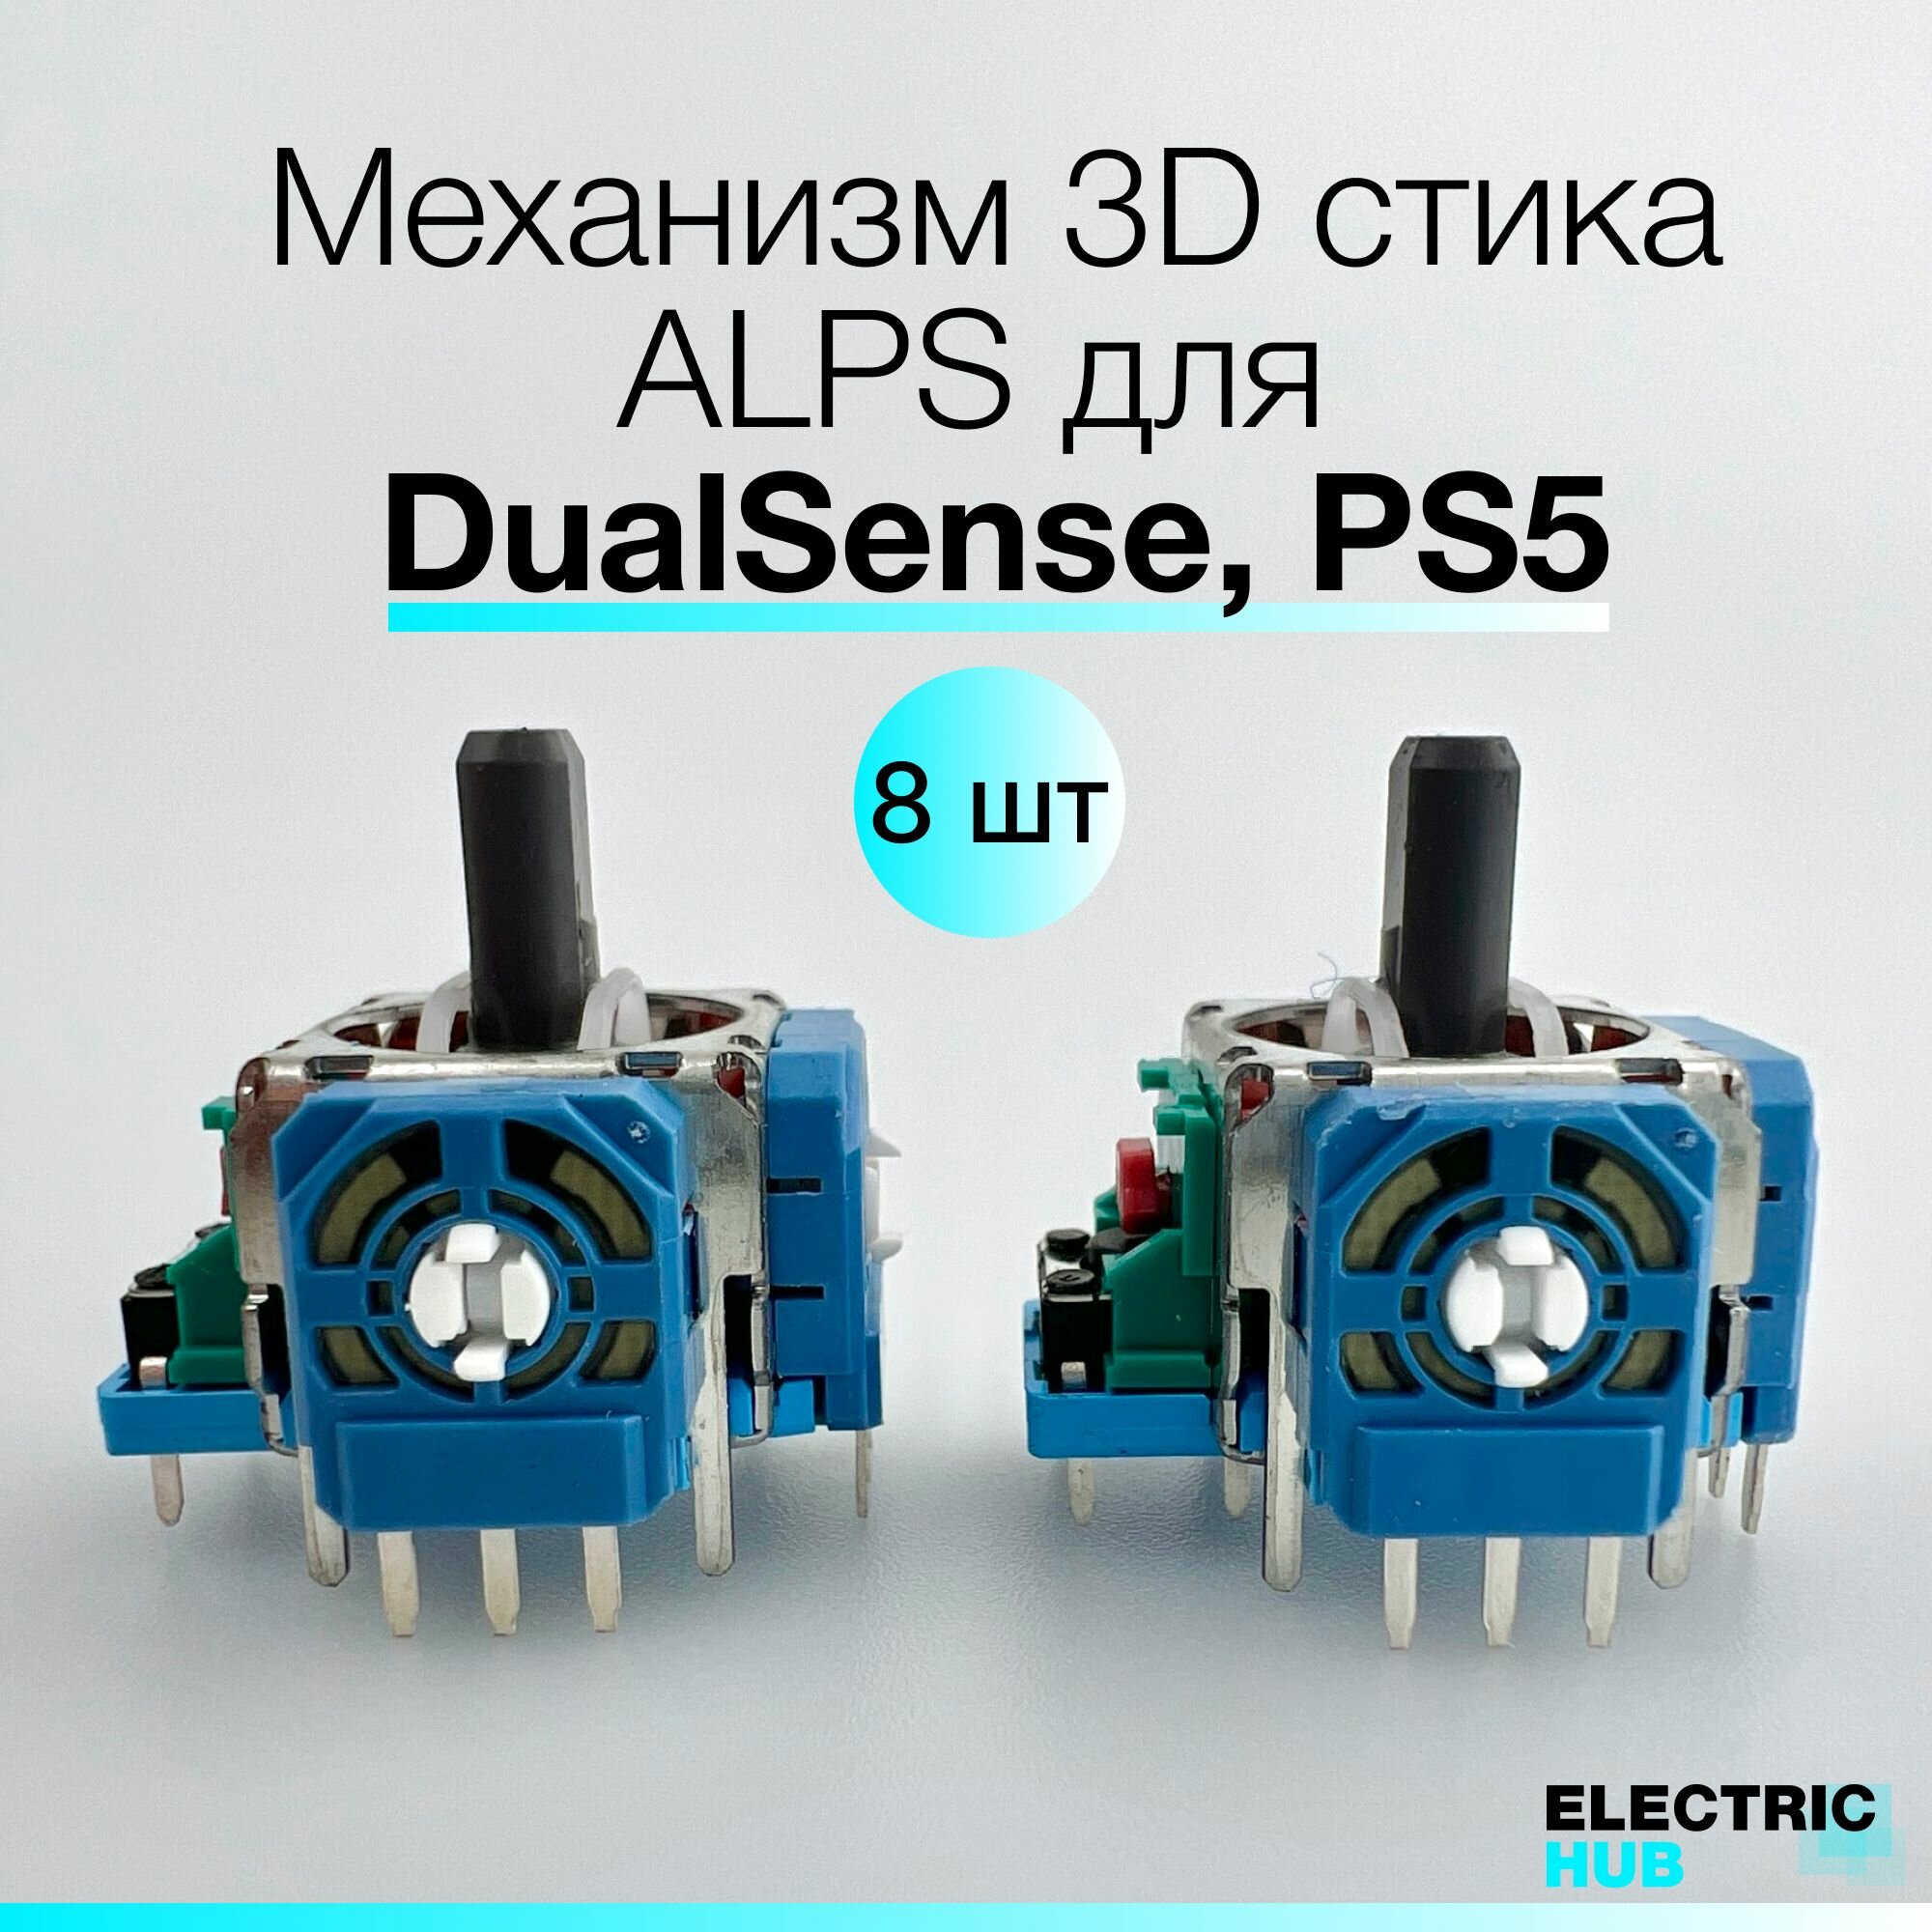 Оригинальный механизм 3D стика ALPS для DualSense, PS5, Синий, для ремонта джойстика/геймпада, 8 шт.